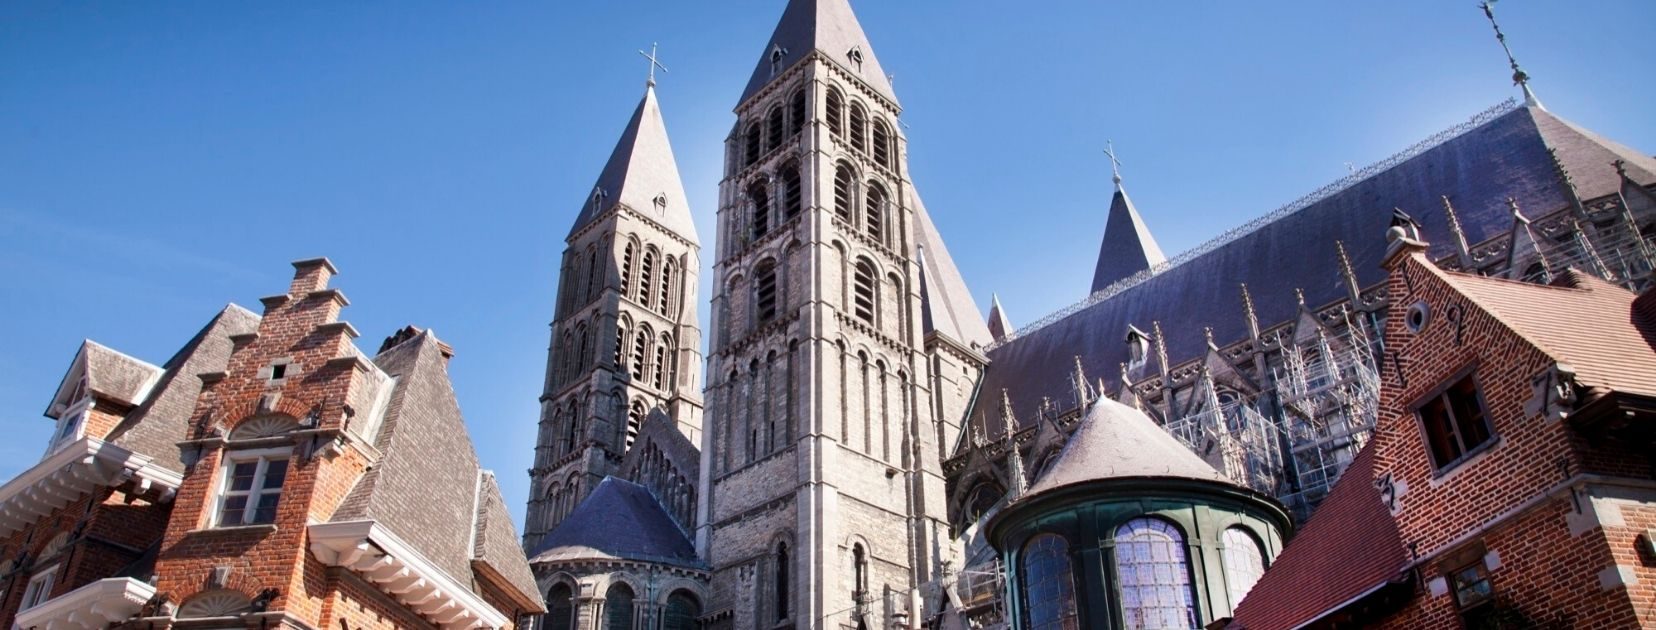 Cathédrale Tournai